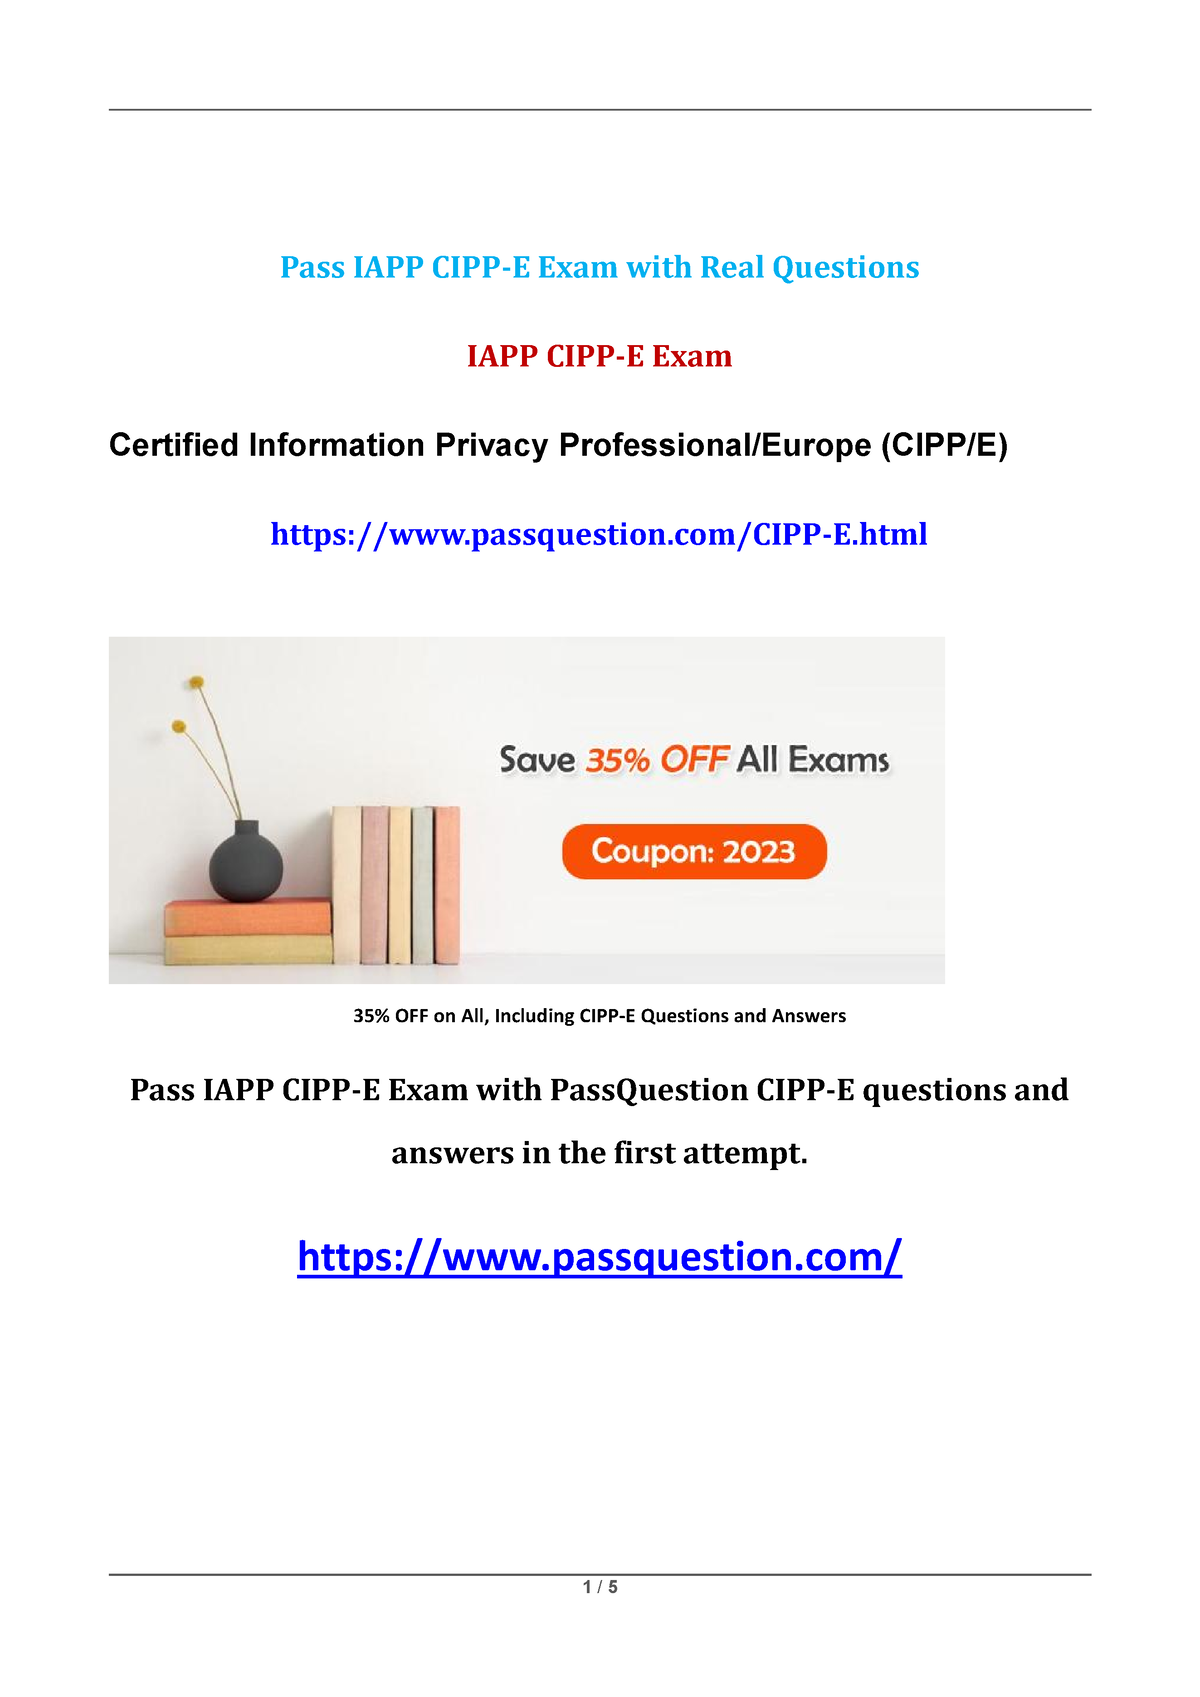 IAPP CIPP E Certification Study Guide 2023 Pass IAPP CIPP E Exam with